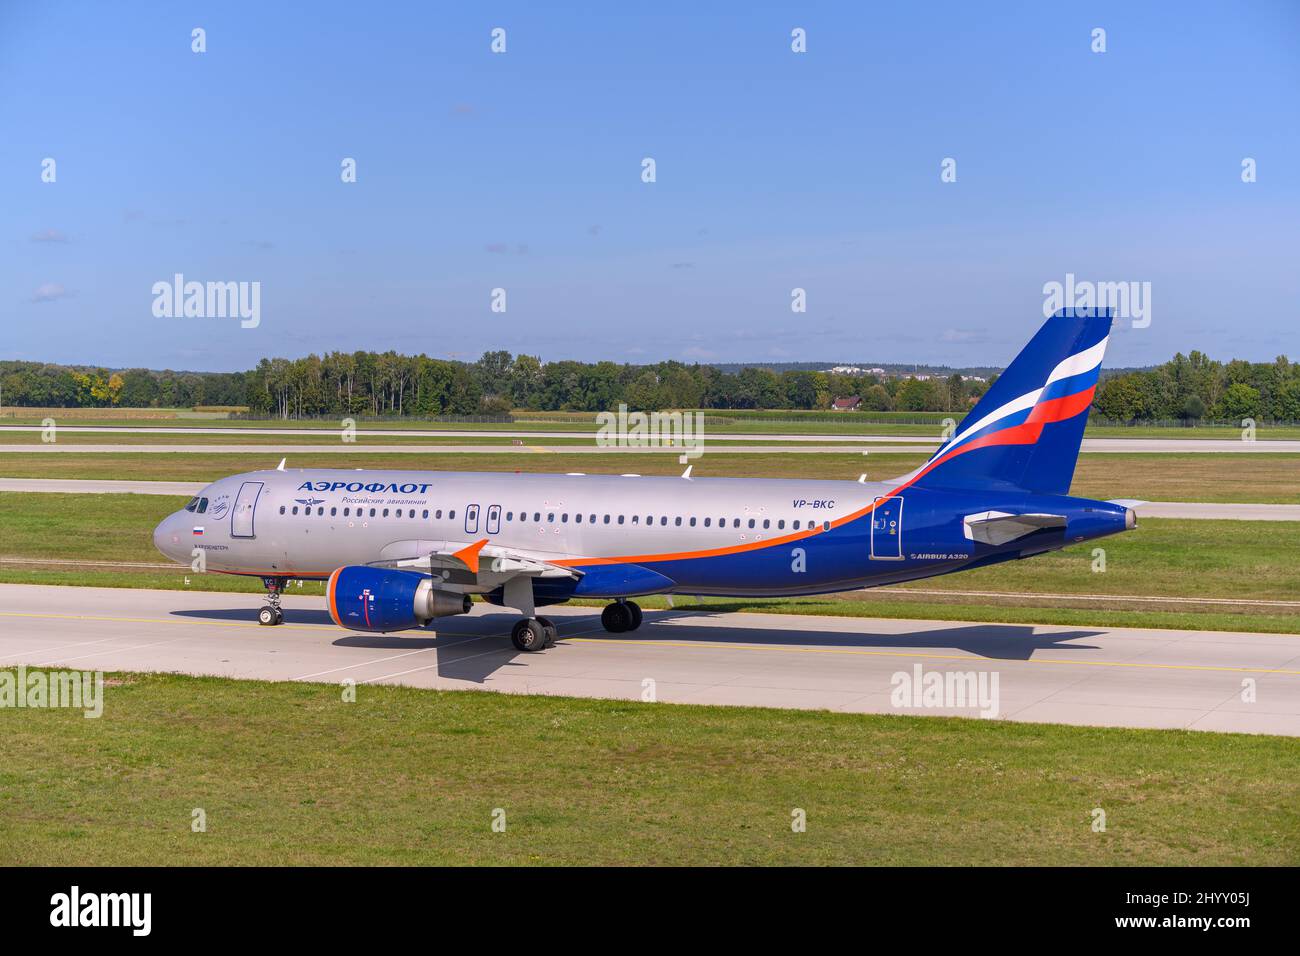 Aeroflot - Russian Airlines Airbus A320-214 avec l'immatriculation de l'avion VP-BKC est en train de rouler sur la piste nord 08L de l'aéroport de Munich Banque D'Images